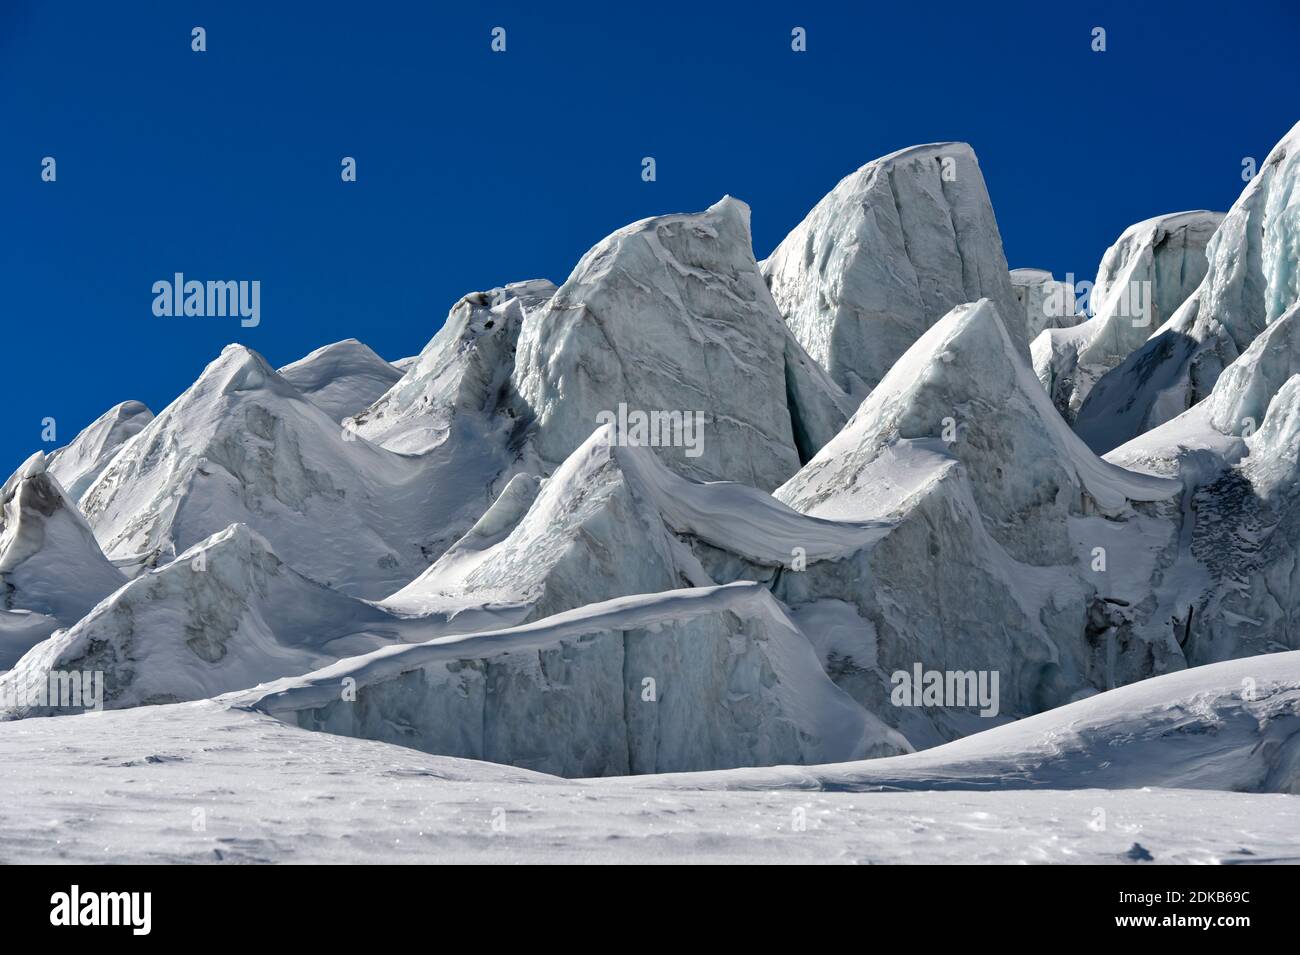 Bloques de hielo glacial, seracs, del glaciar Feegletscher, Saas-Fee, Valais, Suiza Foto de stock